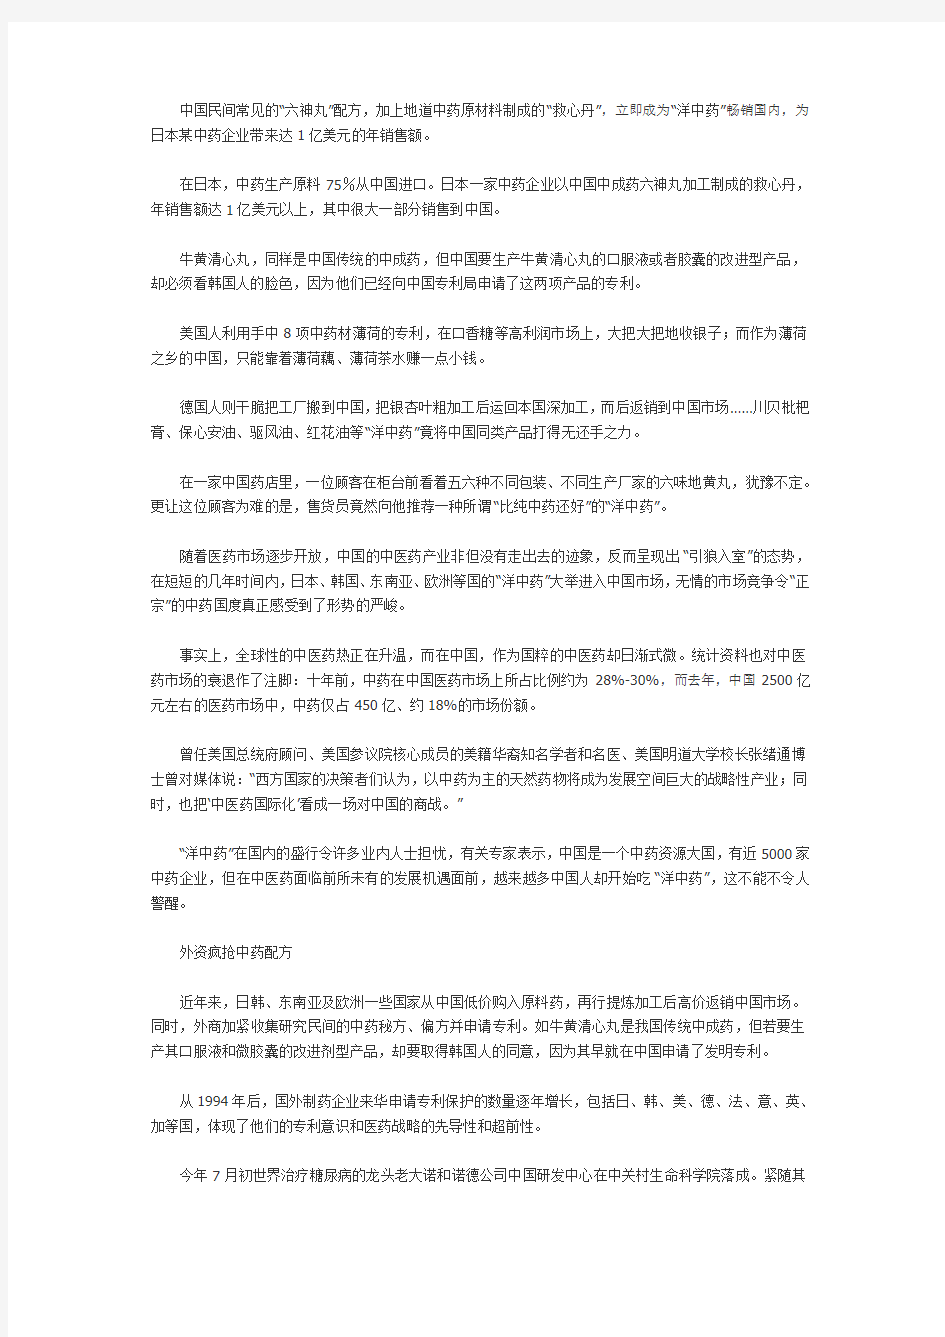 诺华制药在中国宣布将针对中国市场研发中草药